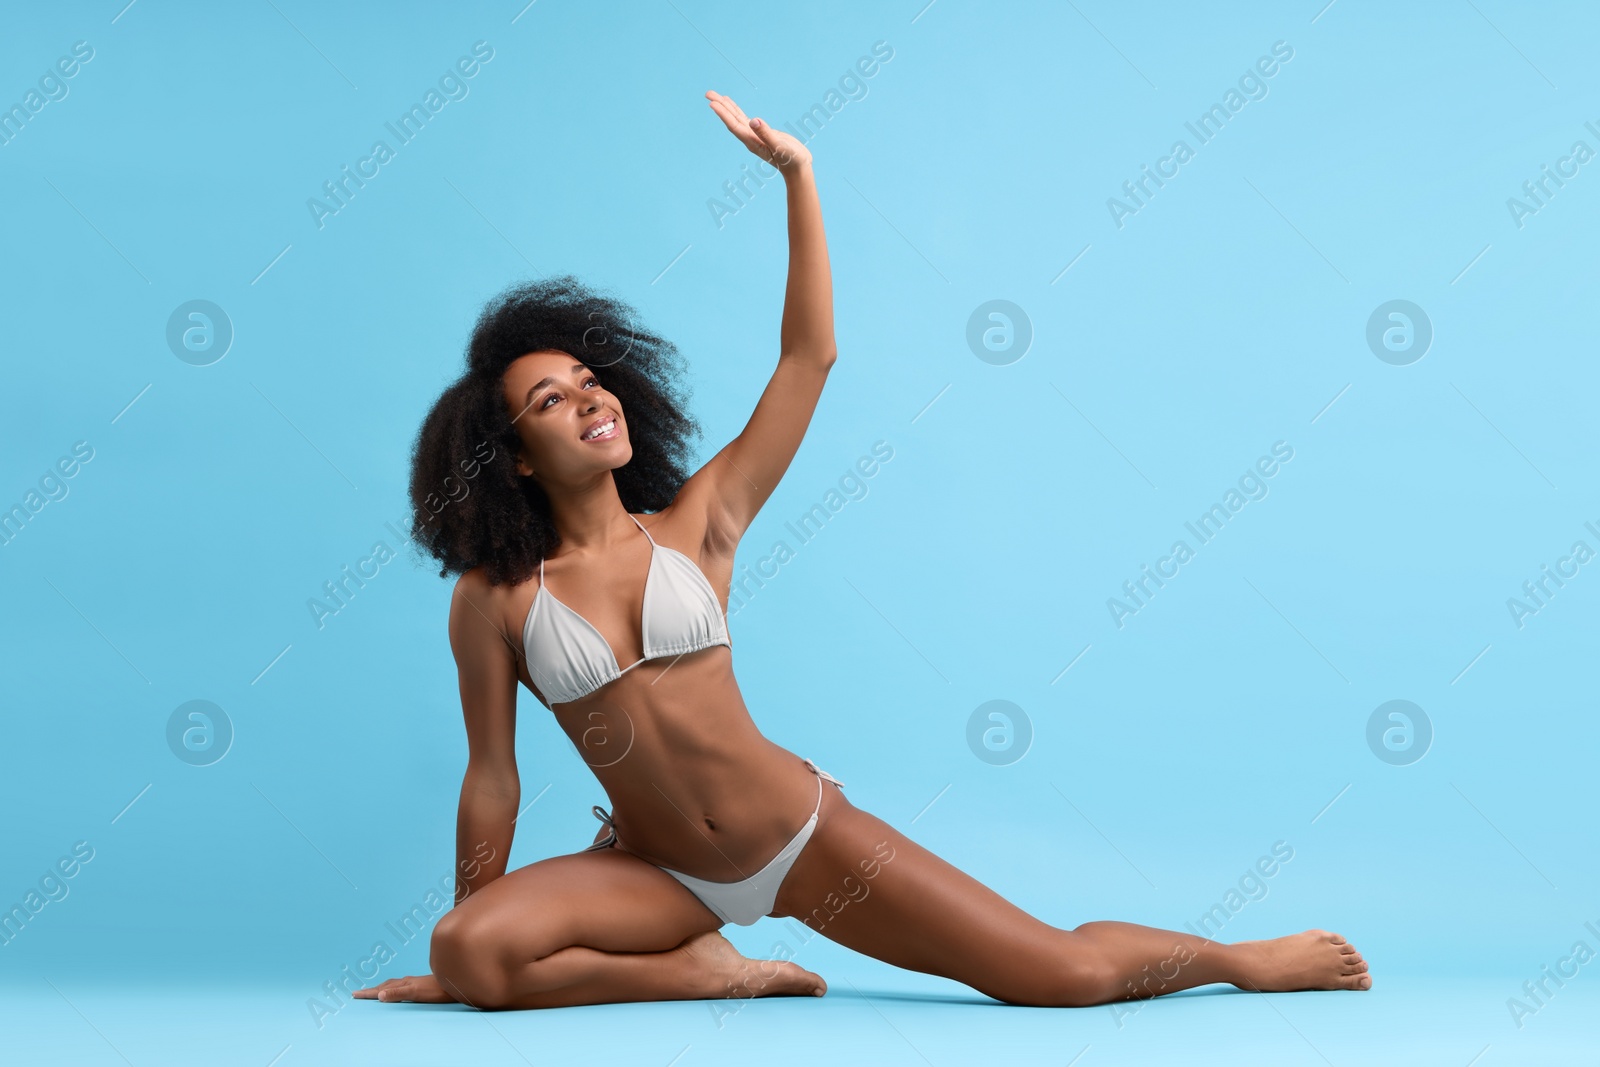 Photo of Beautiful woman in stylish bikini posing on light blue background